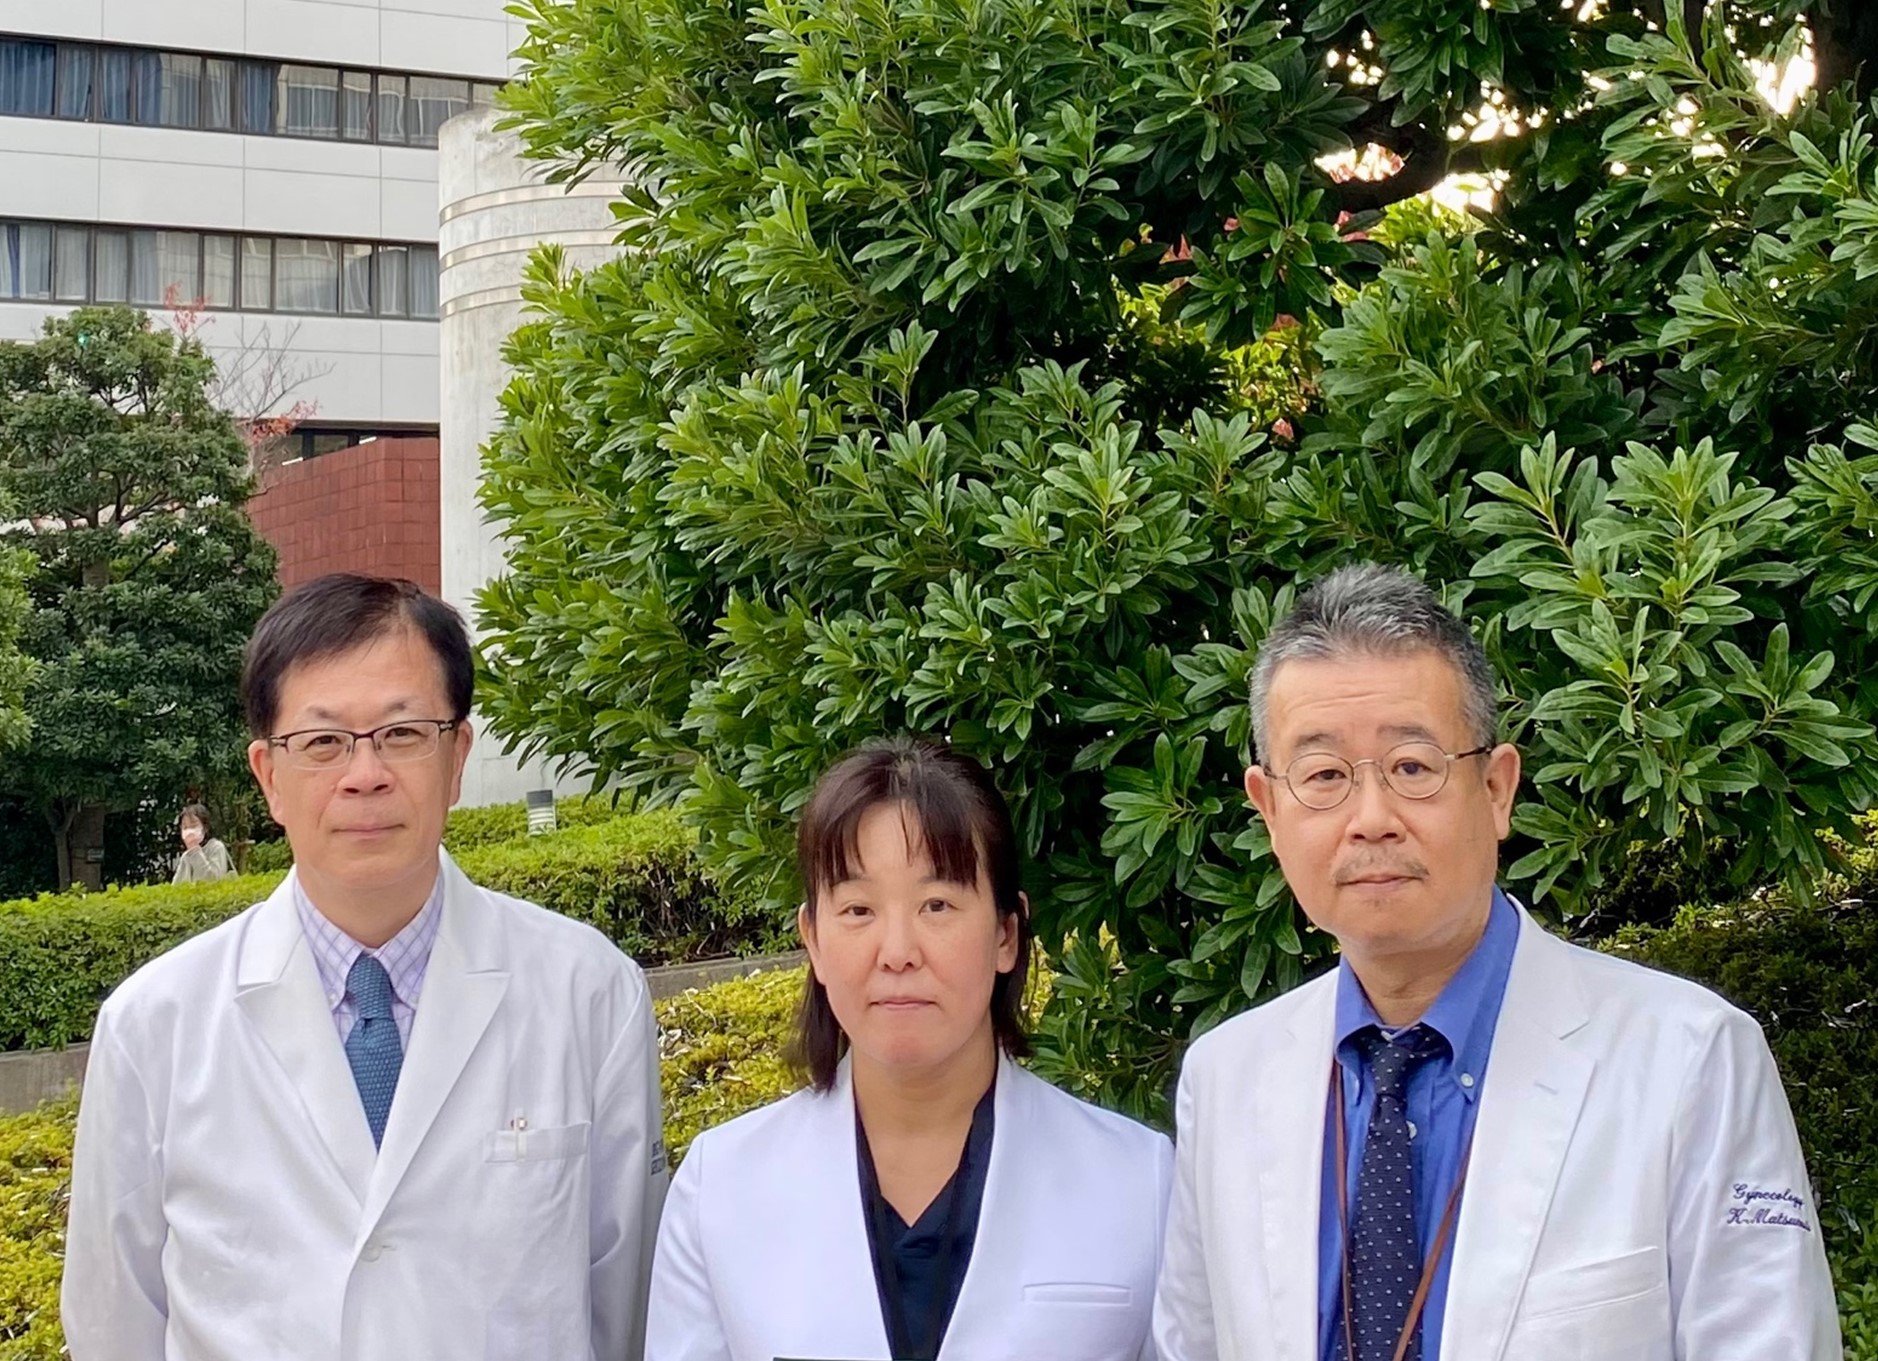 松本光司教授・三村貴志講師が共同で行っている、コルポスコピーのAI診断に関する研究がマイナビニュースで紹介されました！！